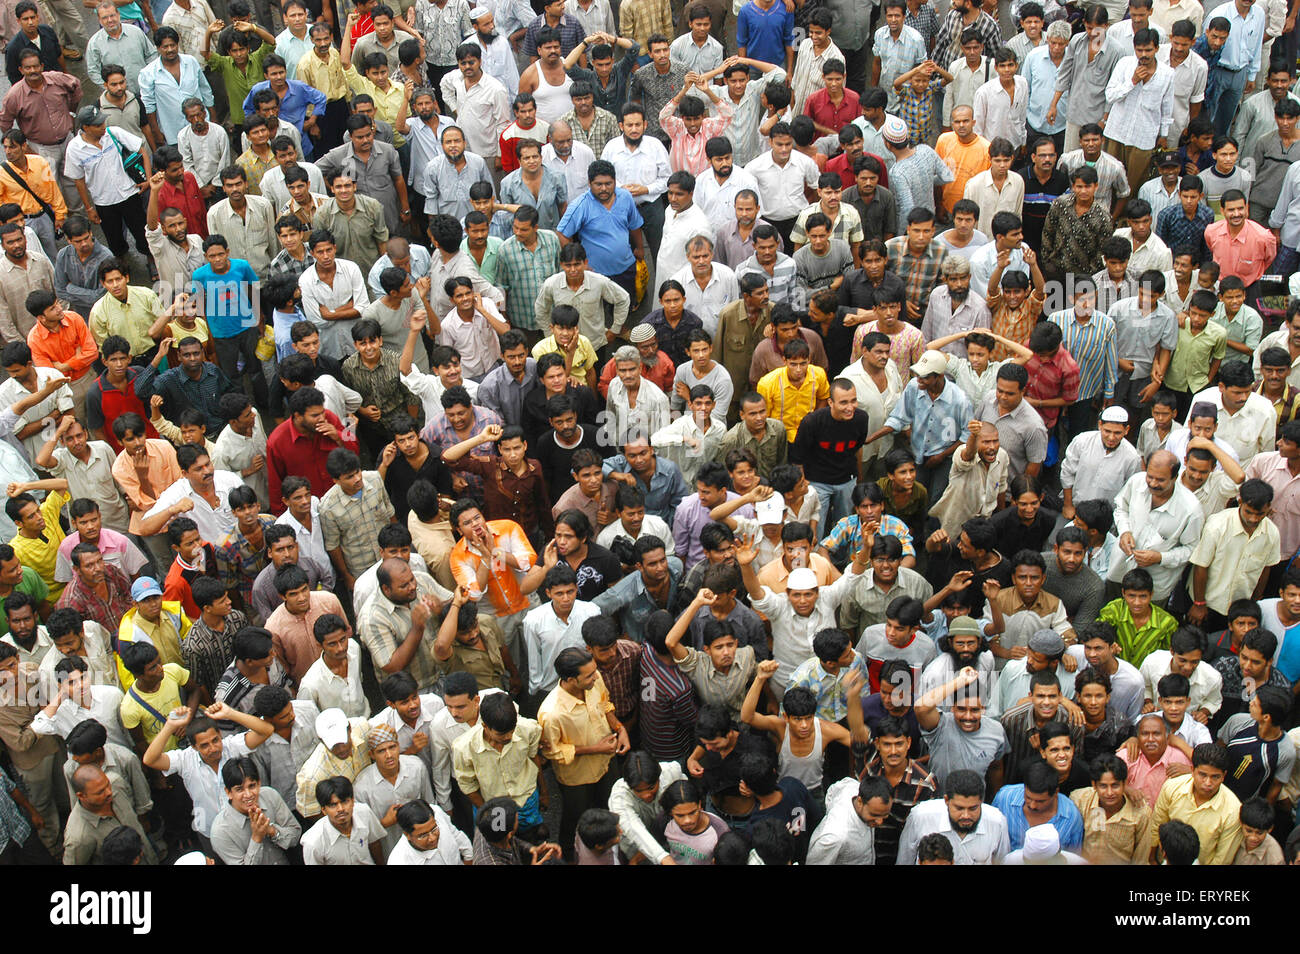 Les gens protestant contre la foule agitée, LBS Marg, Kurla, Bombay, Mumbai,Maharashtra, Inde, Asie, Asie, Indien Banque D'Images